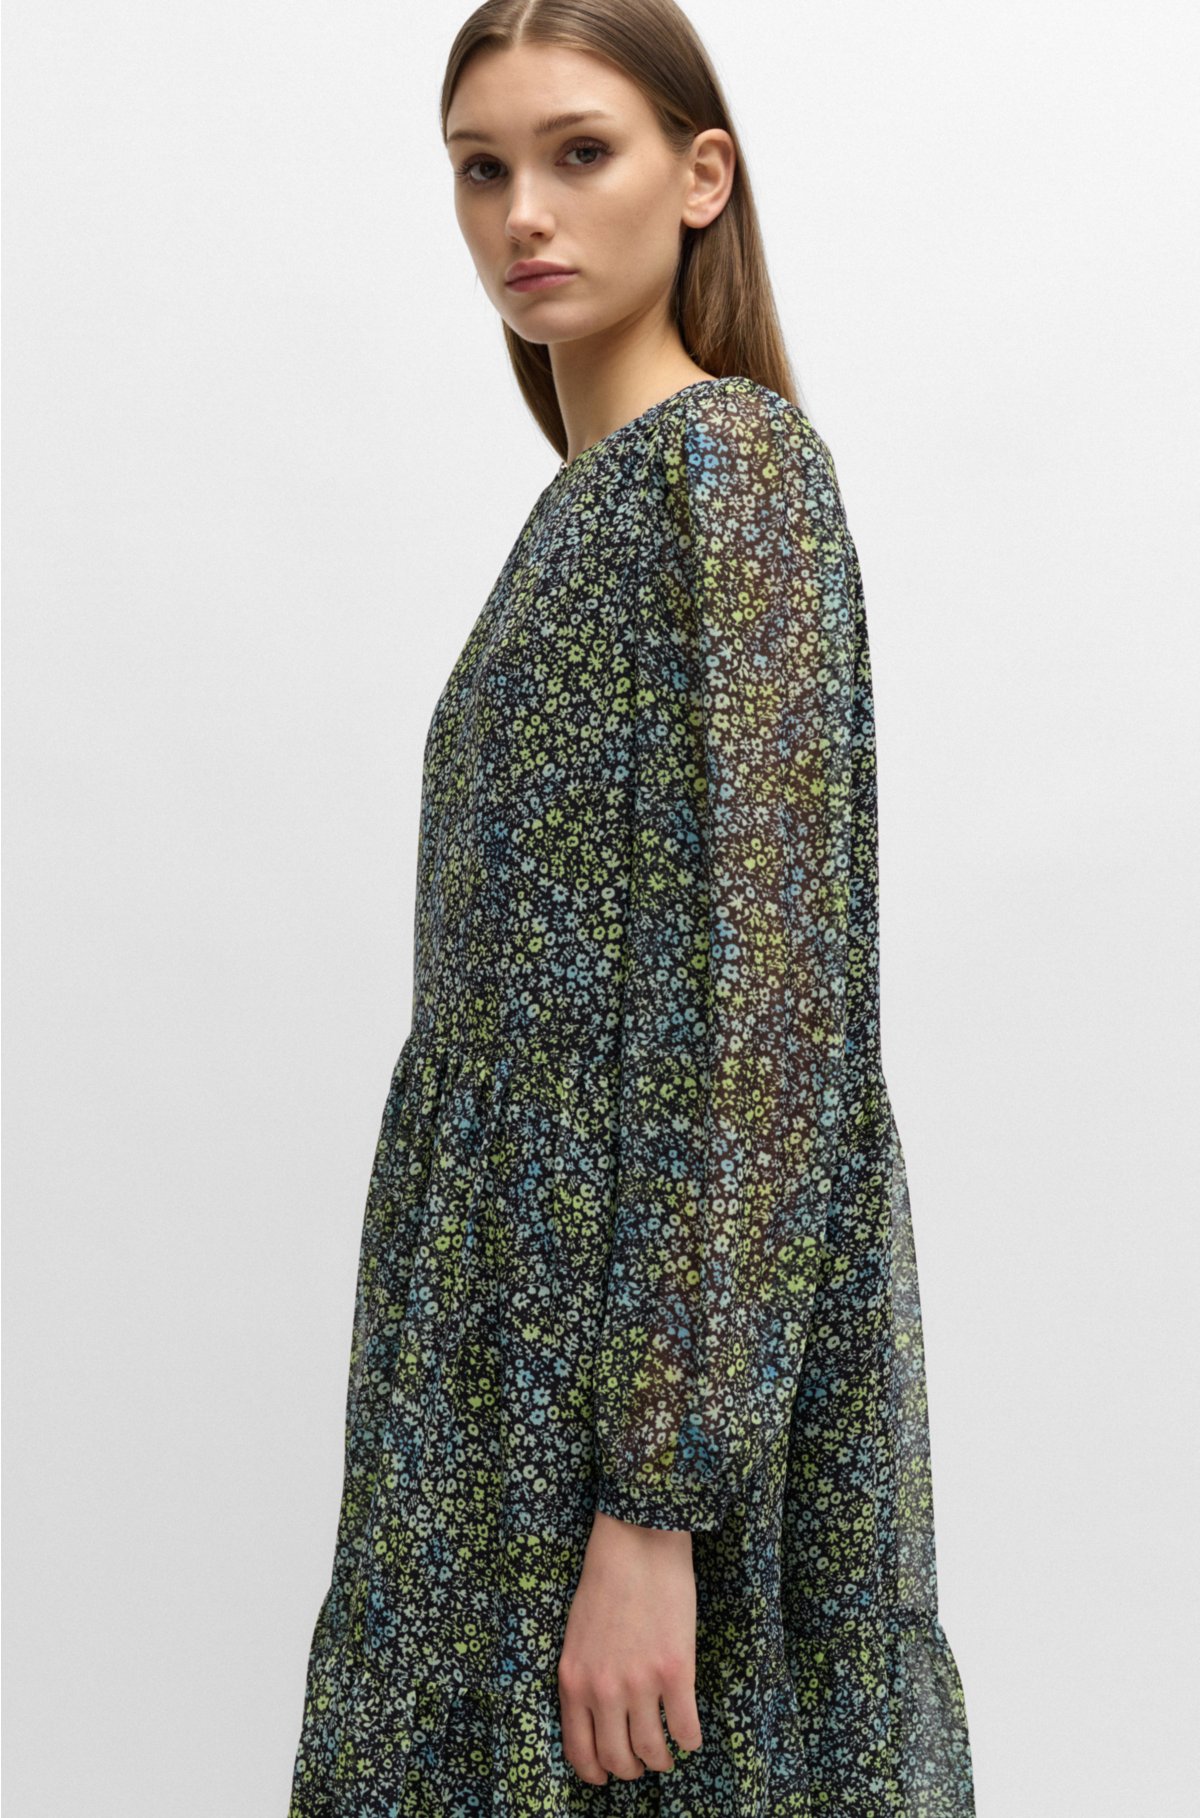 Crepe-Georgette long-sleeved dress with seasonal print, Patterned